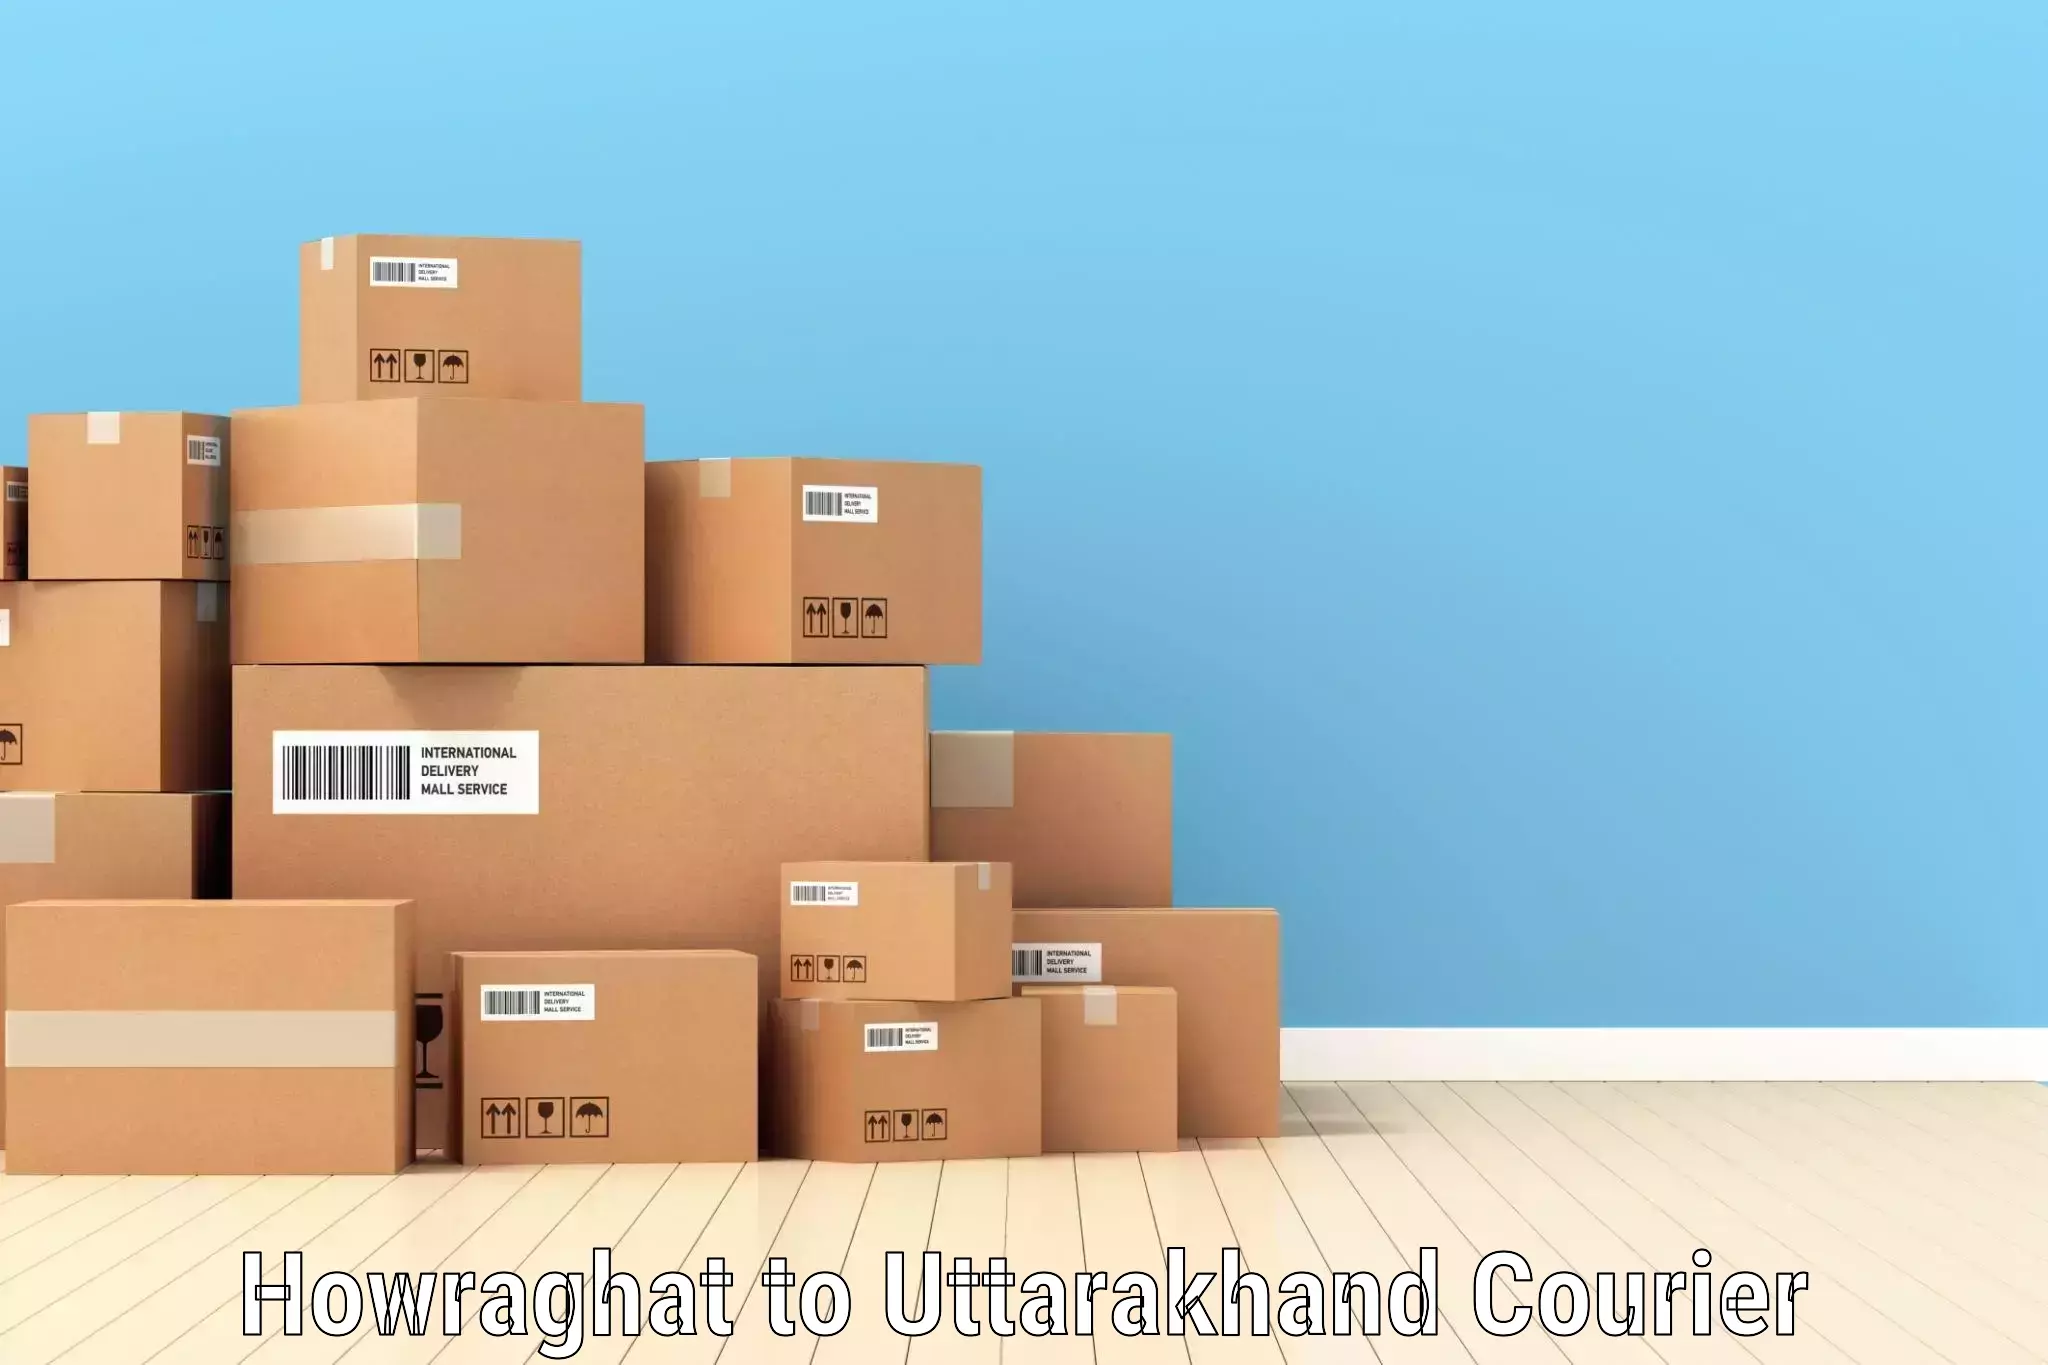 Custom courier packaging Howraghat to IIT Roorkee